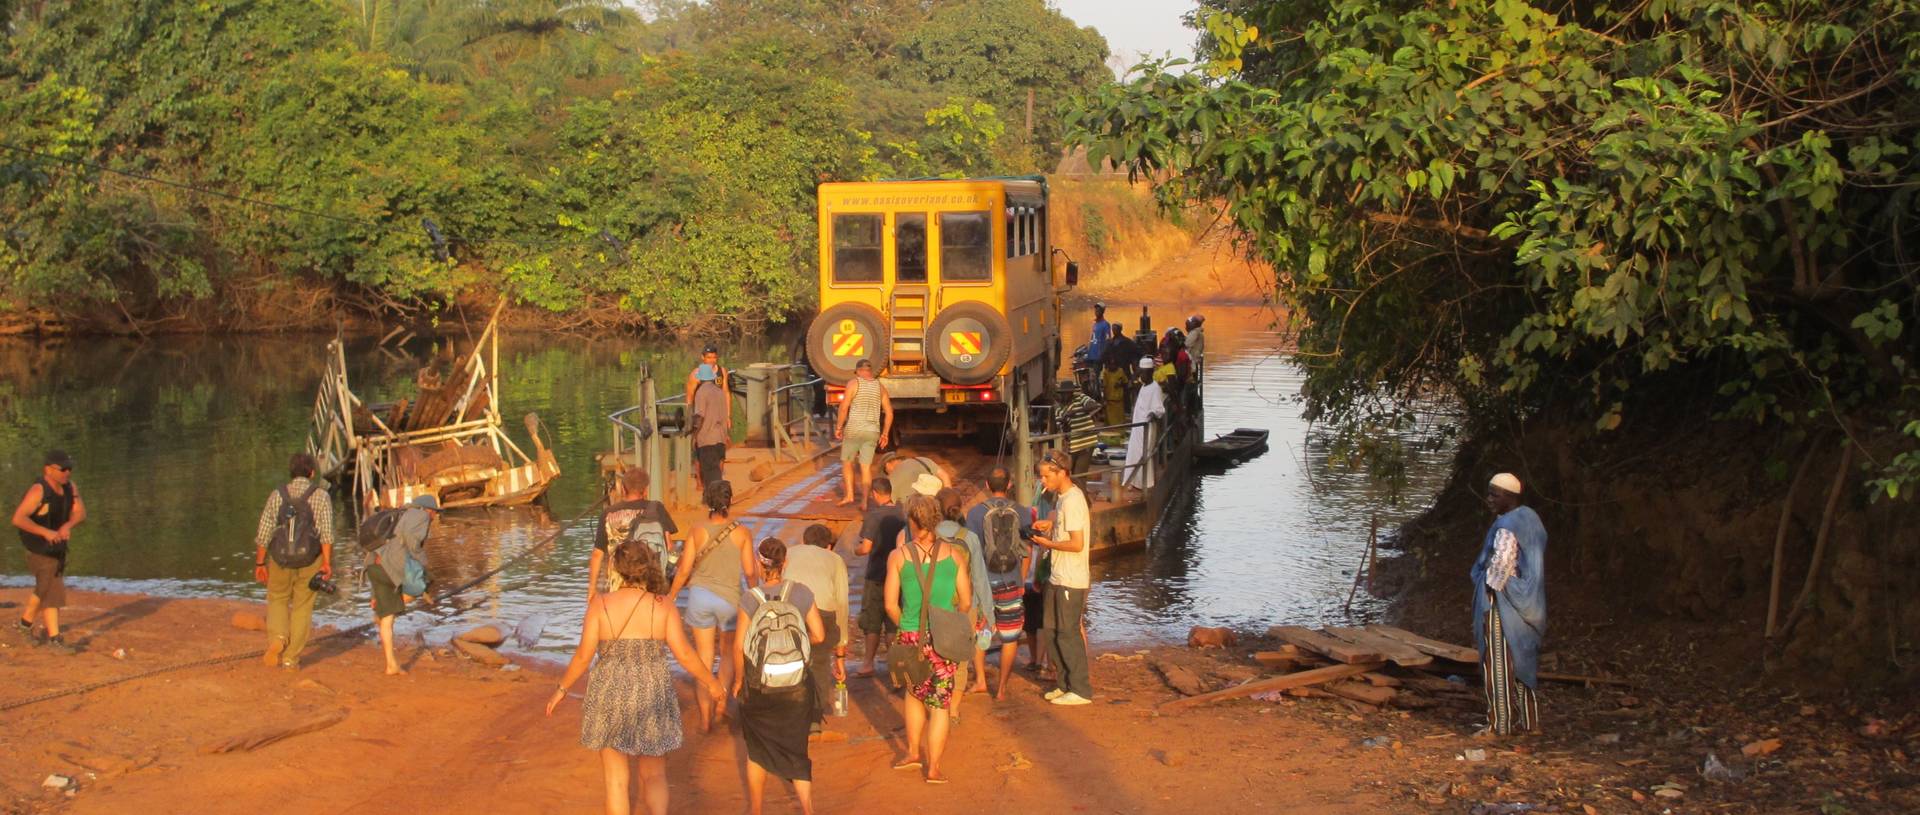 River Crossing, Sierra Leone